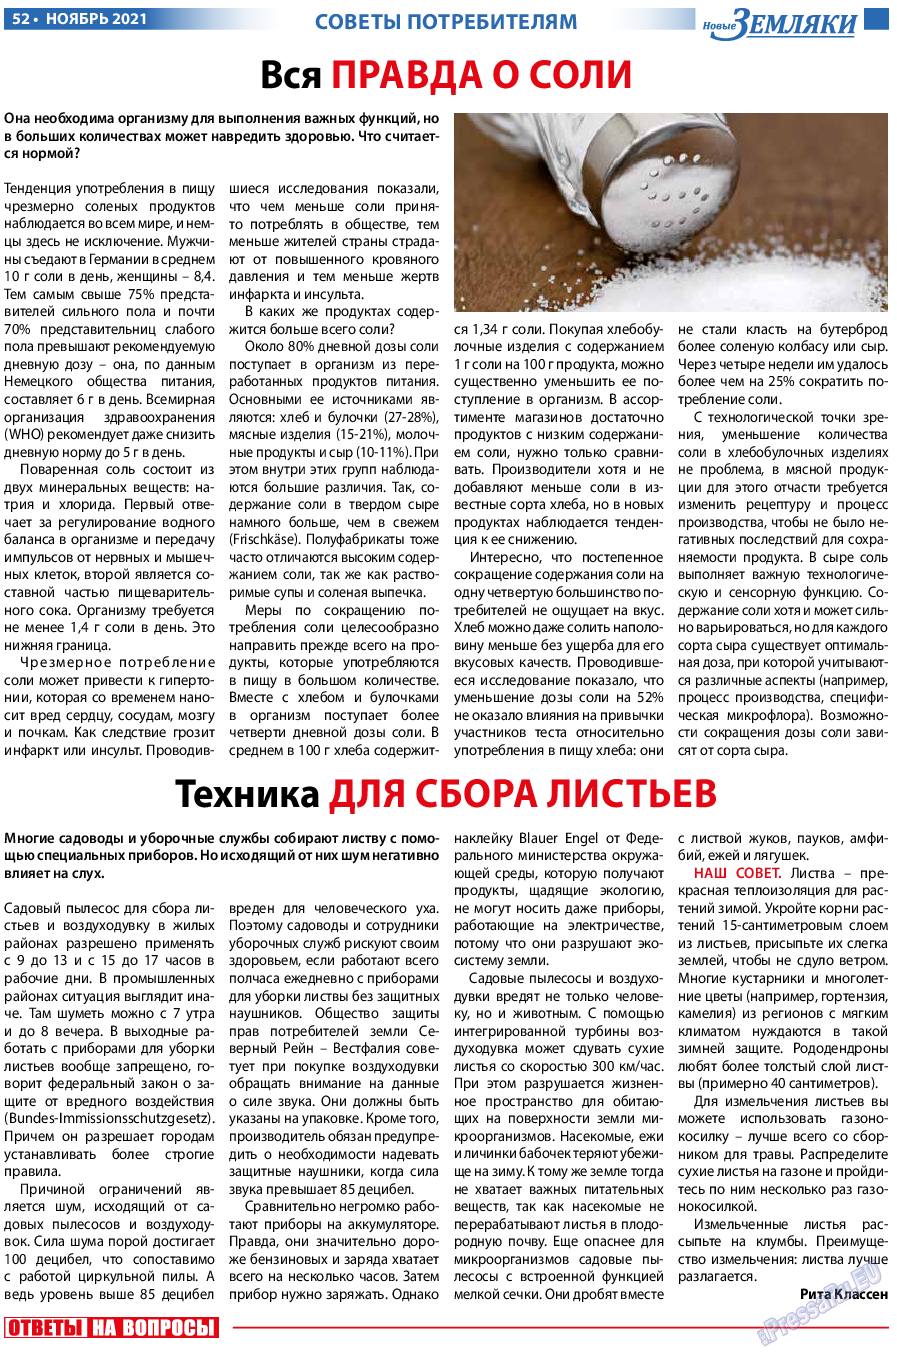 Новые Земляки, газета. 2021 №11 стр.52